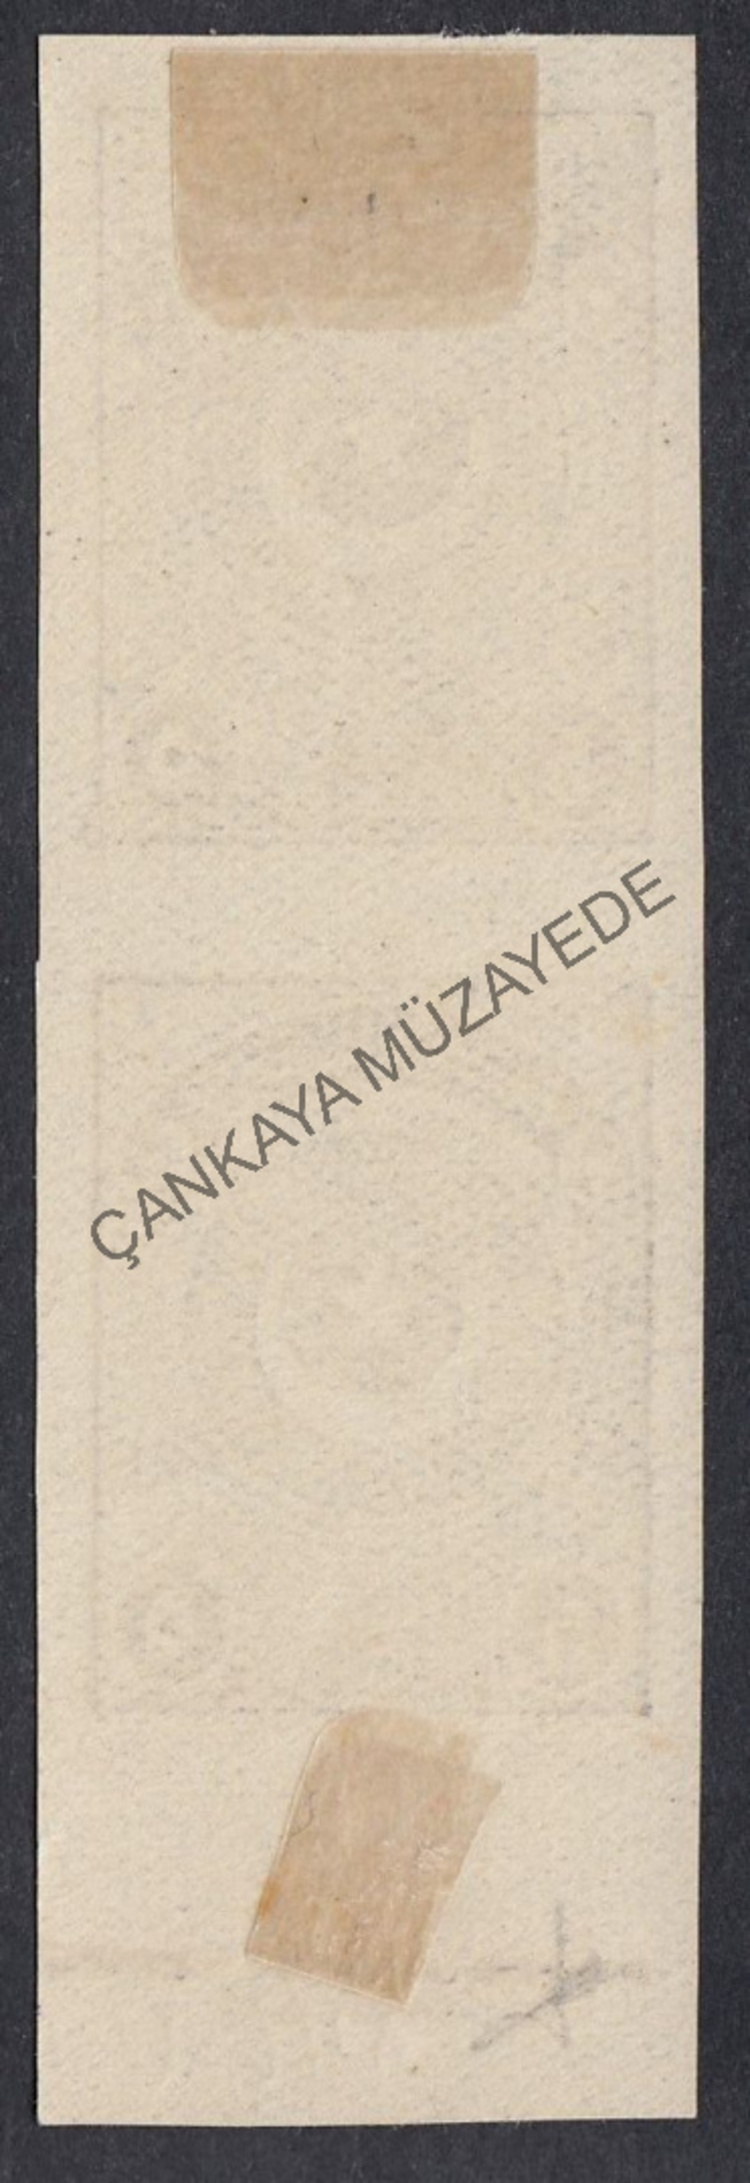 1923 ikinci ayyldz 5 Kr dantelsiz per damgasz err | Çankaya Müzayede | Cumhuriyet